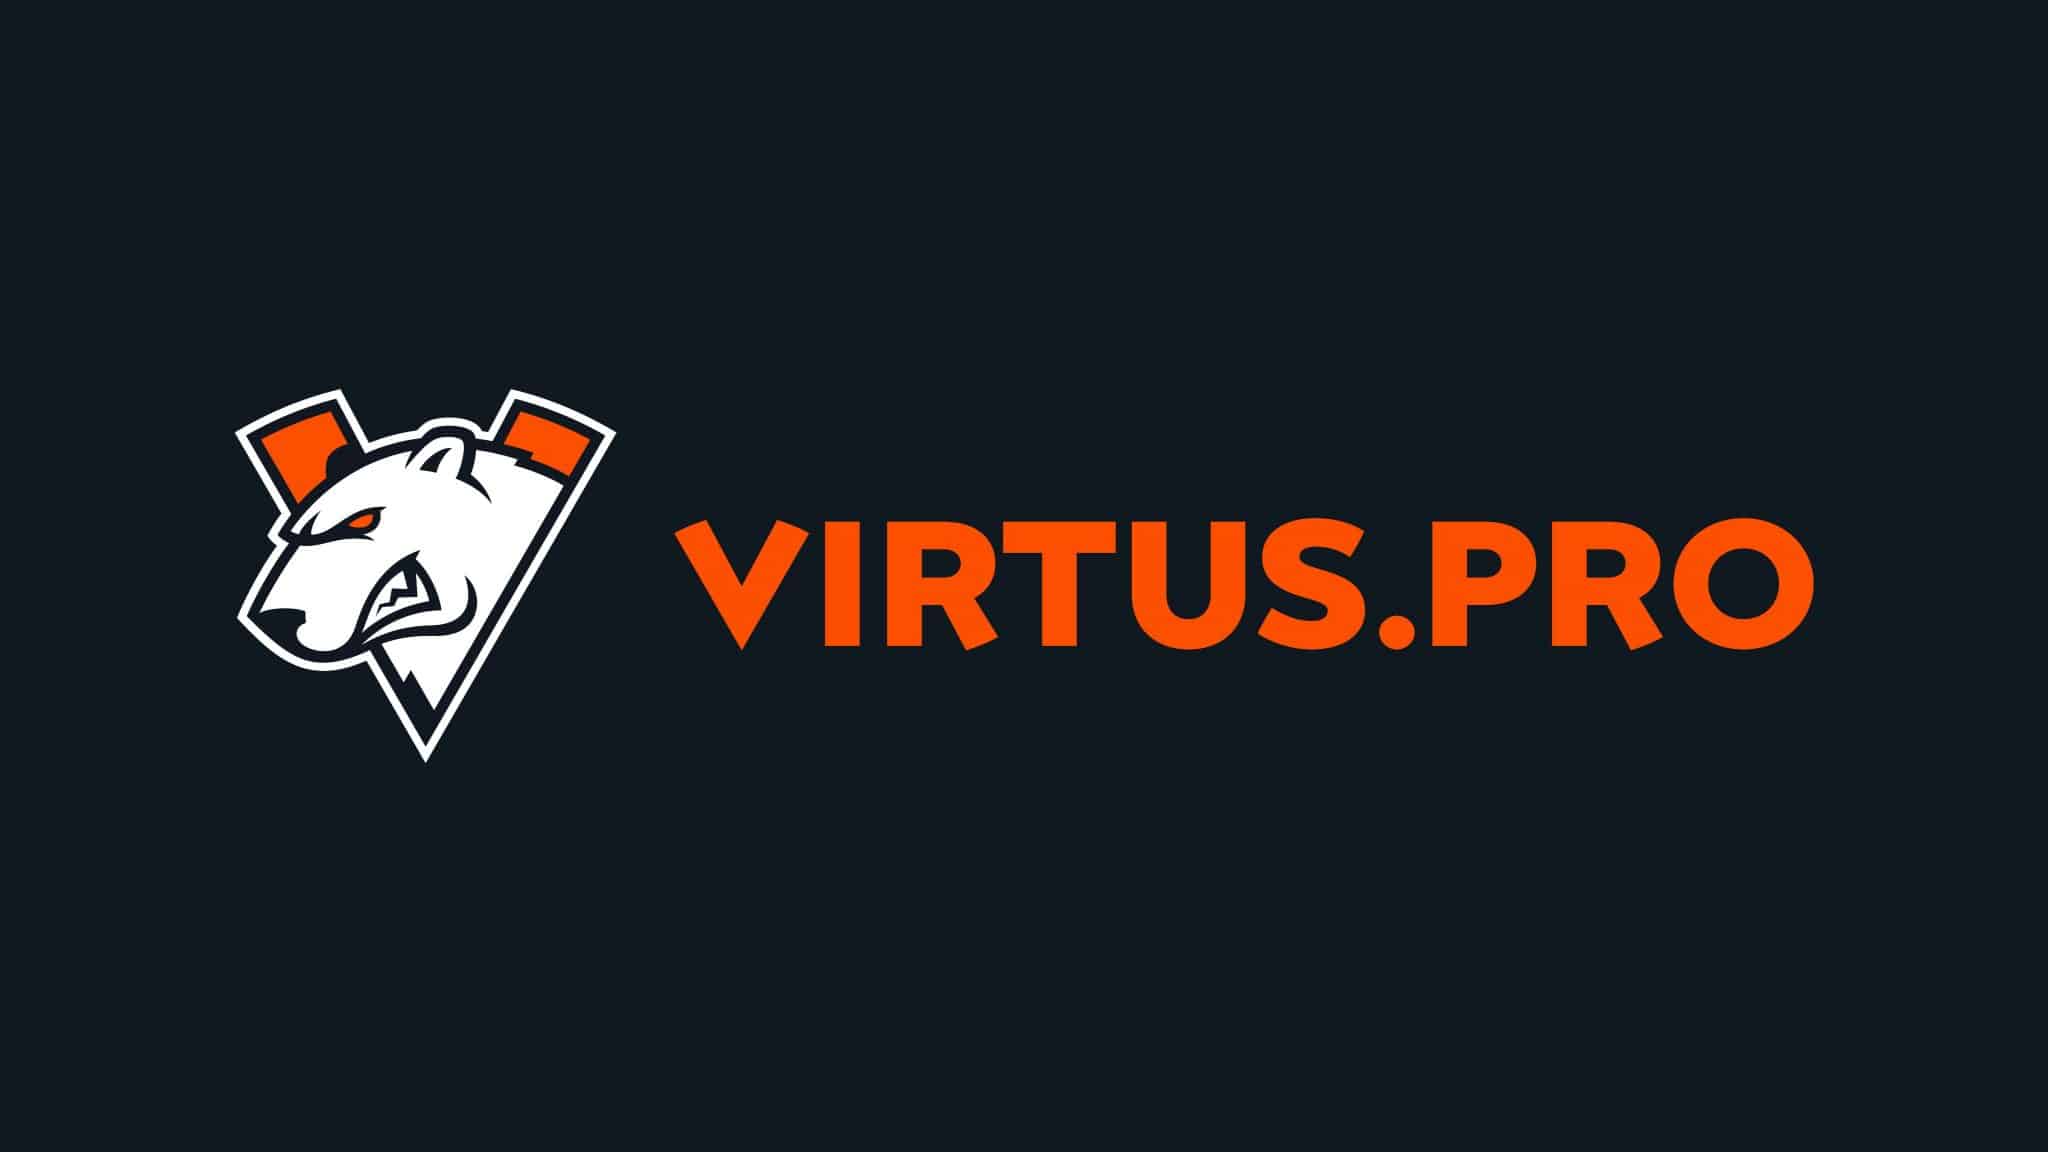 Virstus.pro logo